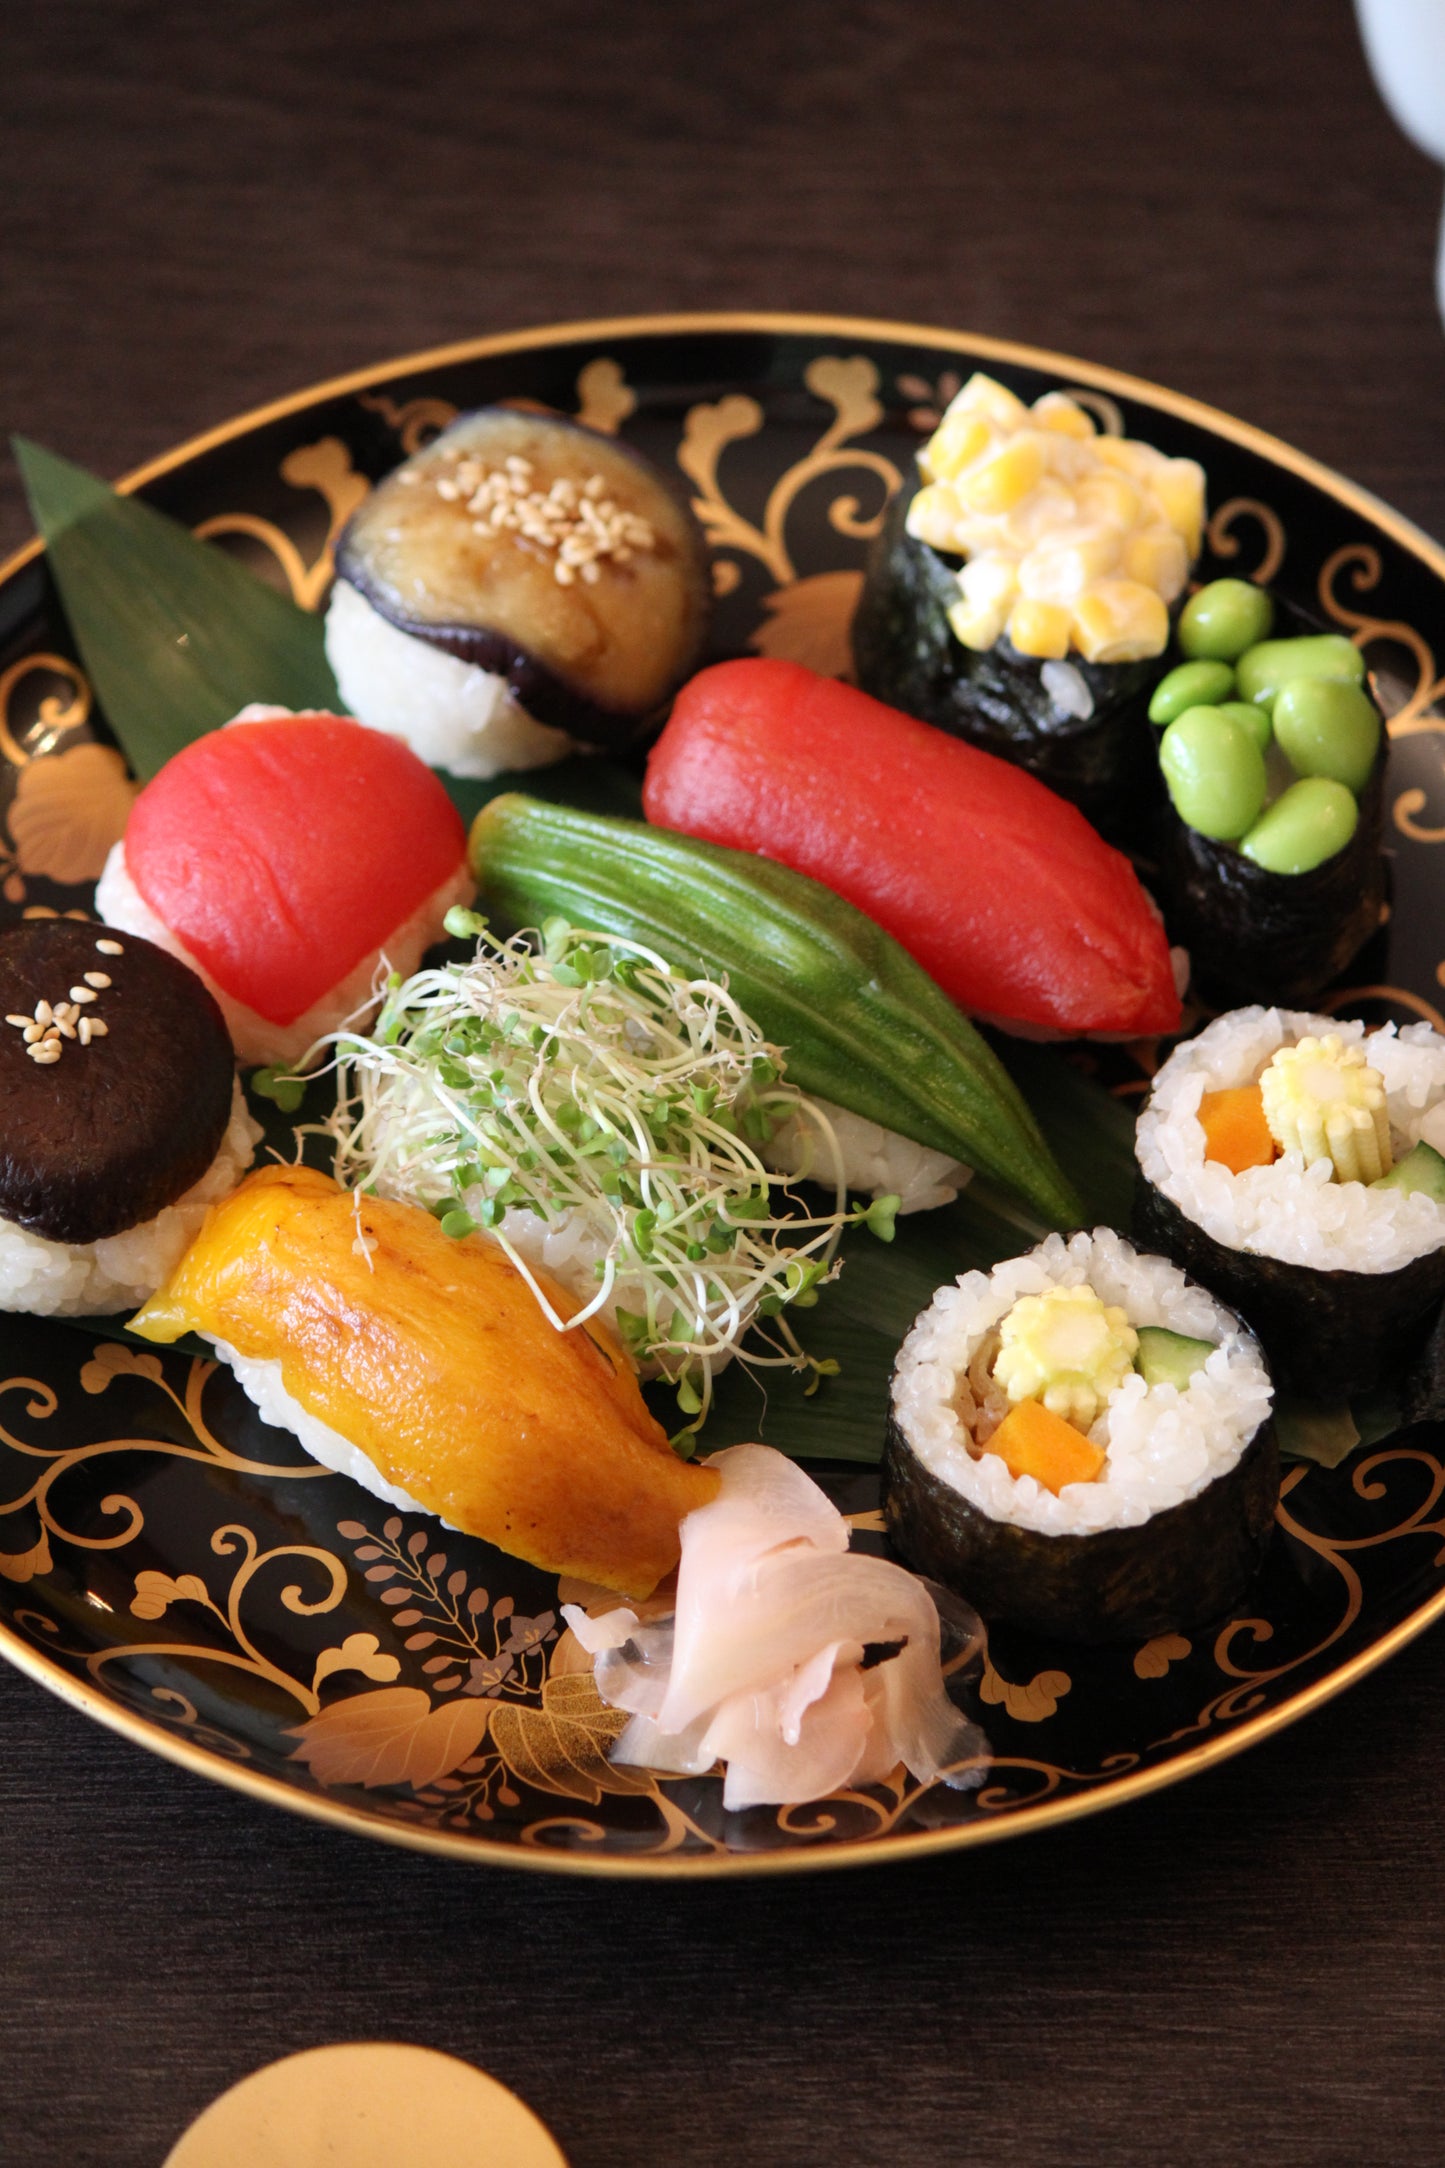 Sushi Making Workshop Experience in Osaka